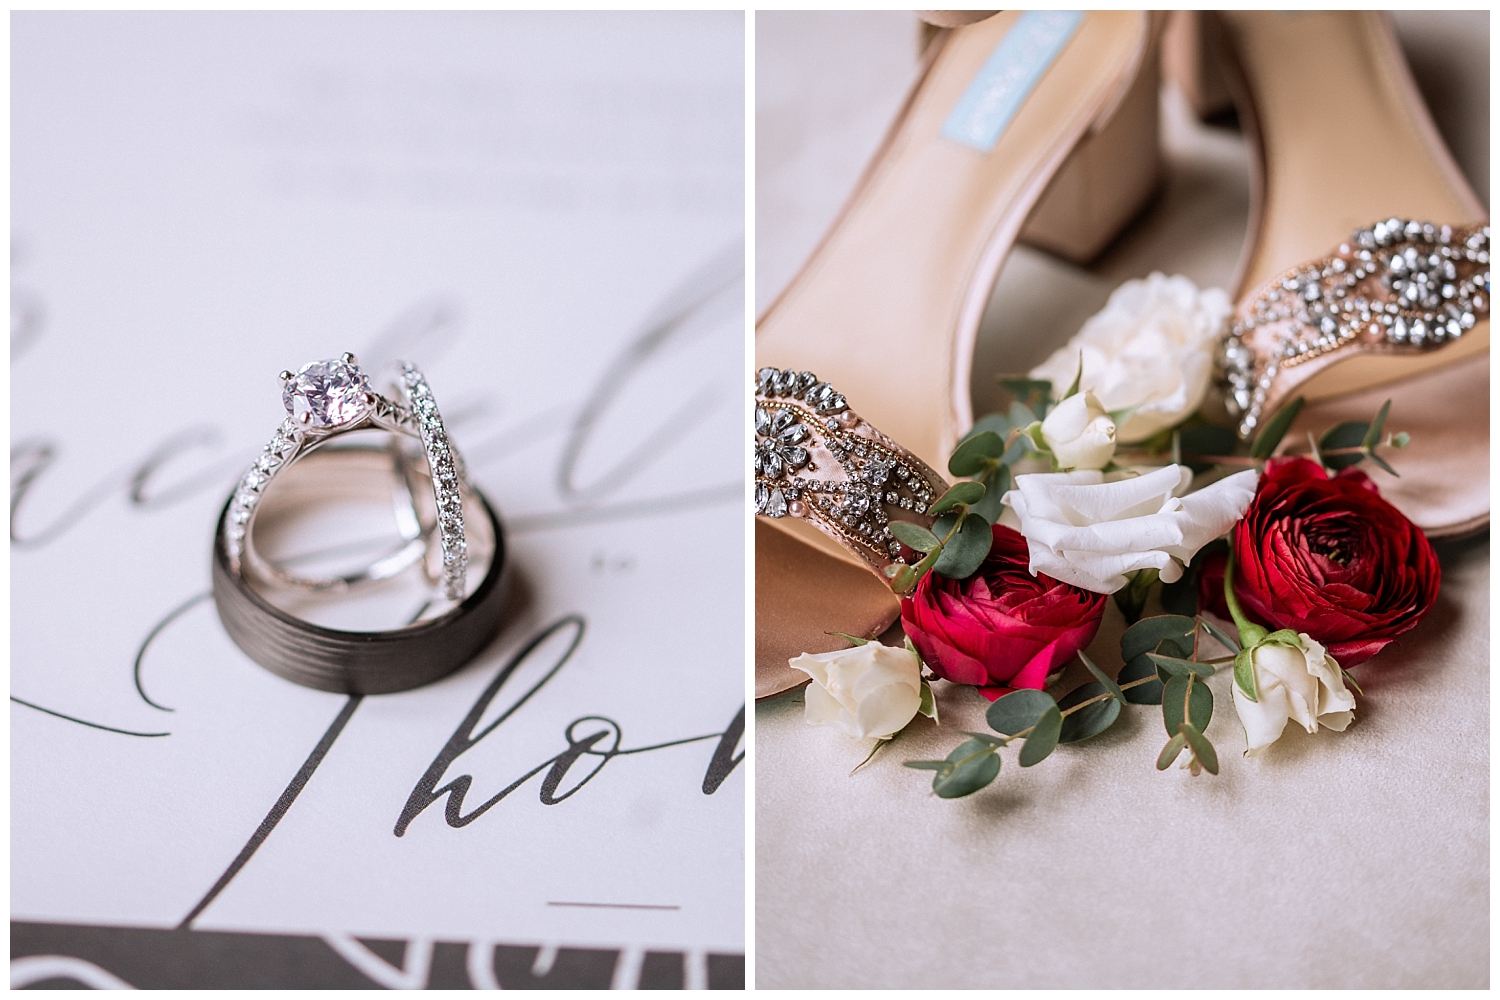 Bridal details and wedding rings at Ashton Creek Vineyard wedding